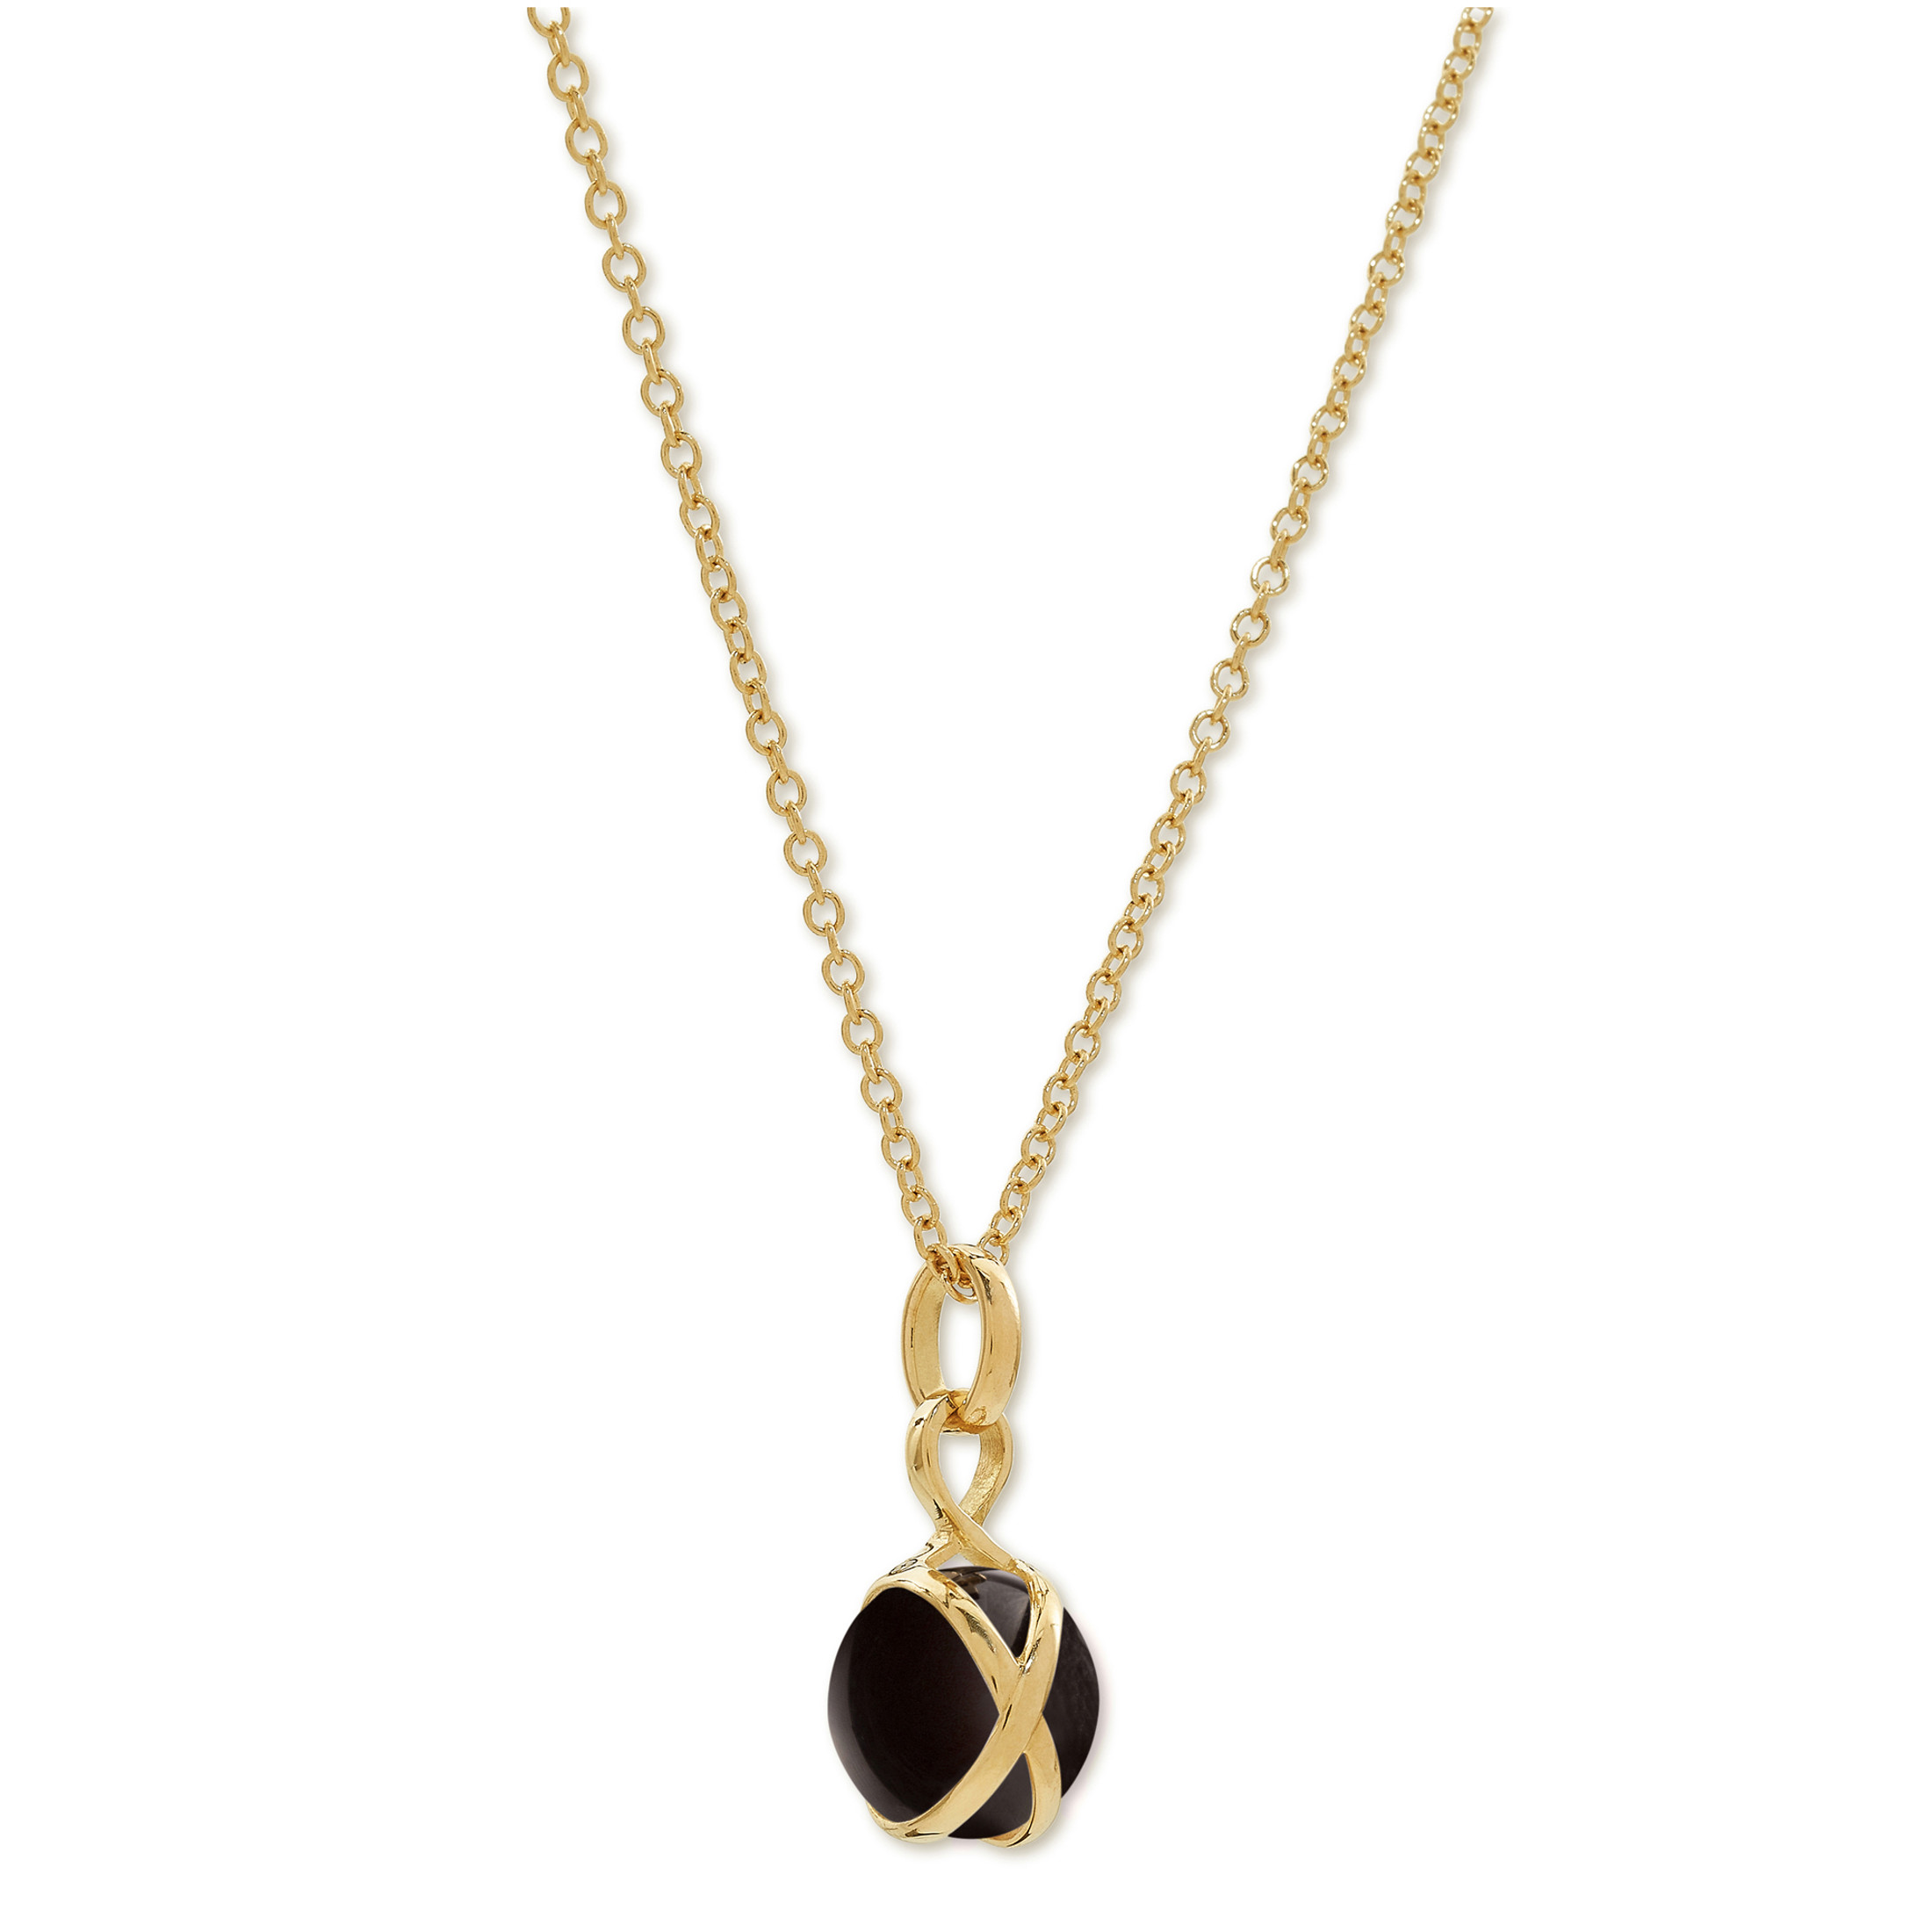 Prisma Black Agate Brilliant Chain Necklace with Pendant